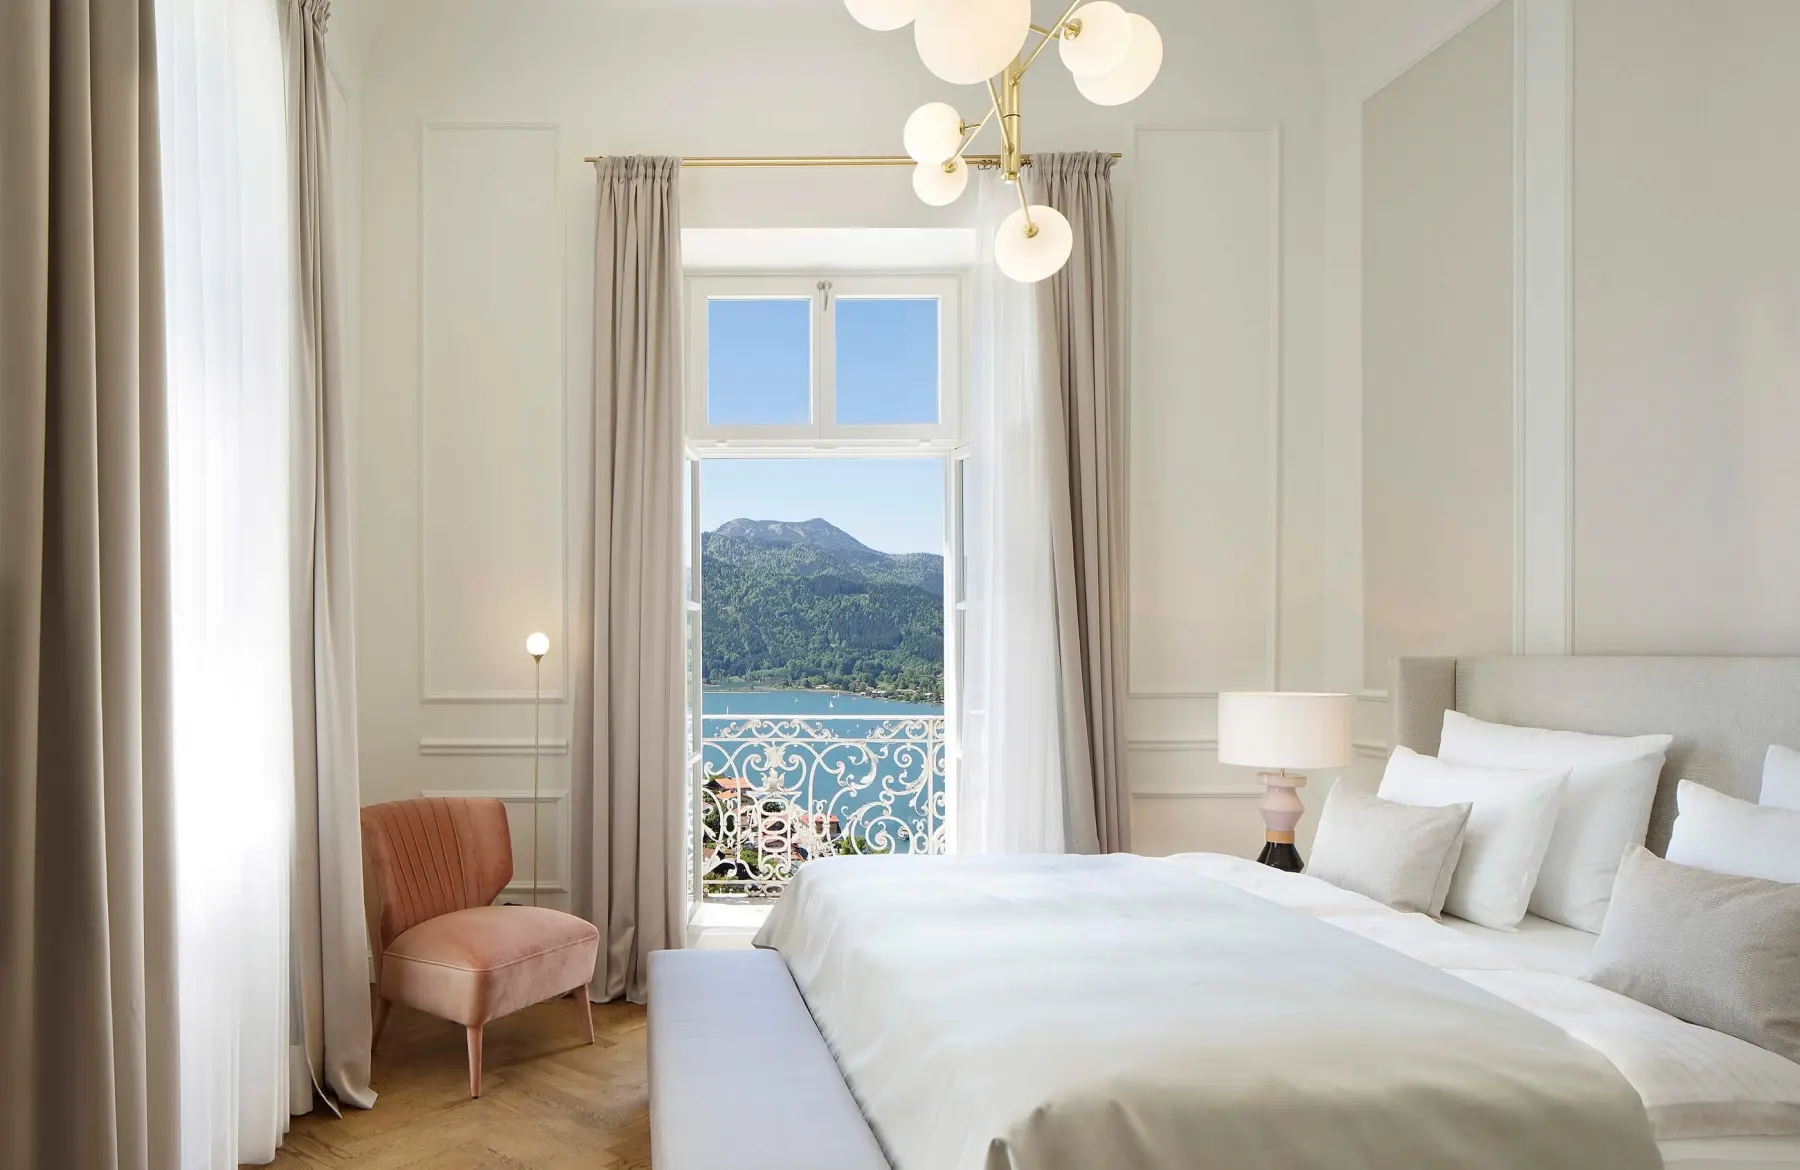 Doppelbett neben einem Fenster mit Blick auf den Tegernsee im Lifestyle Hotel in Bayern